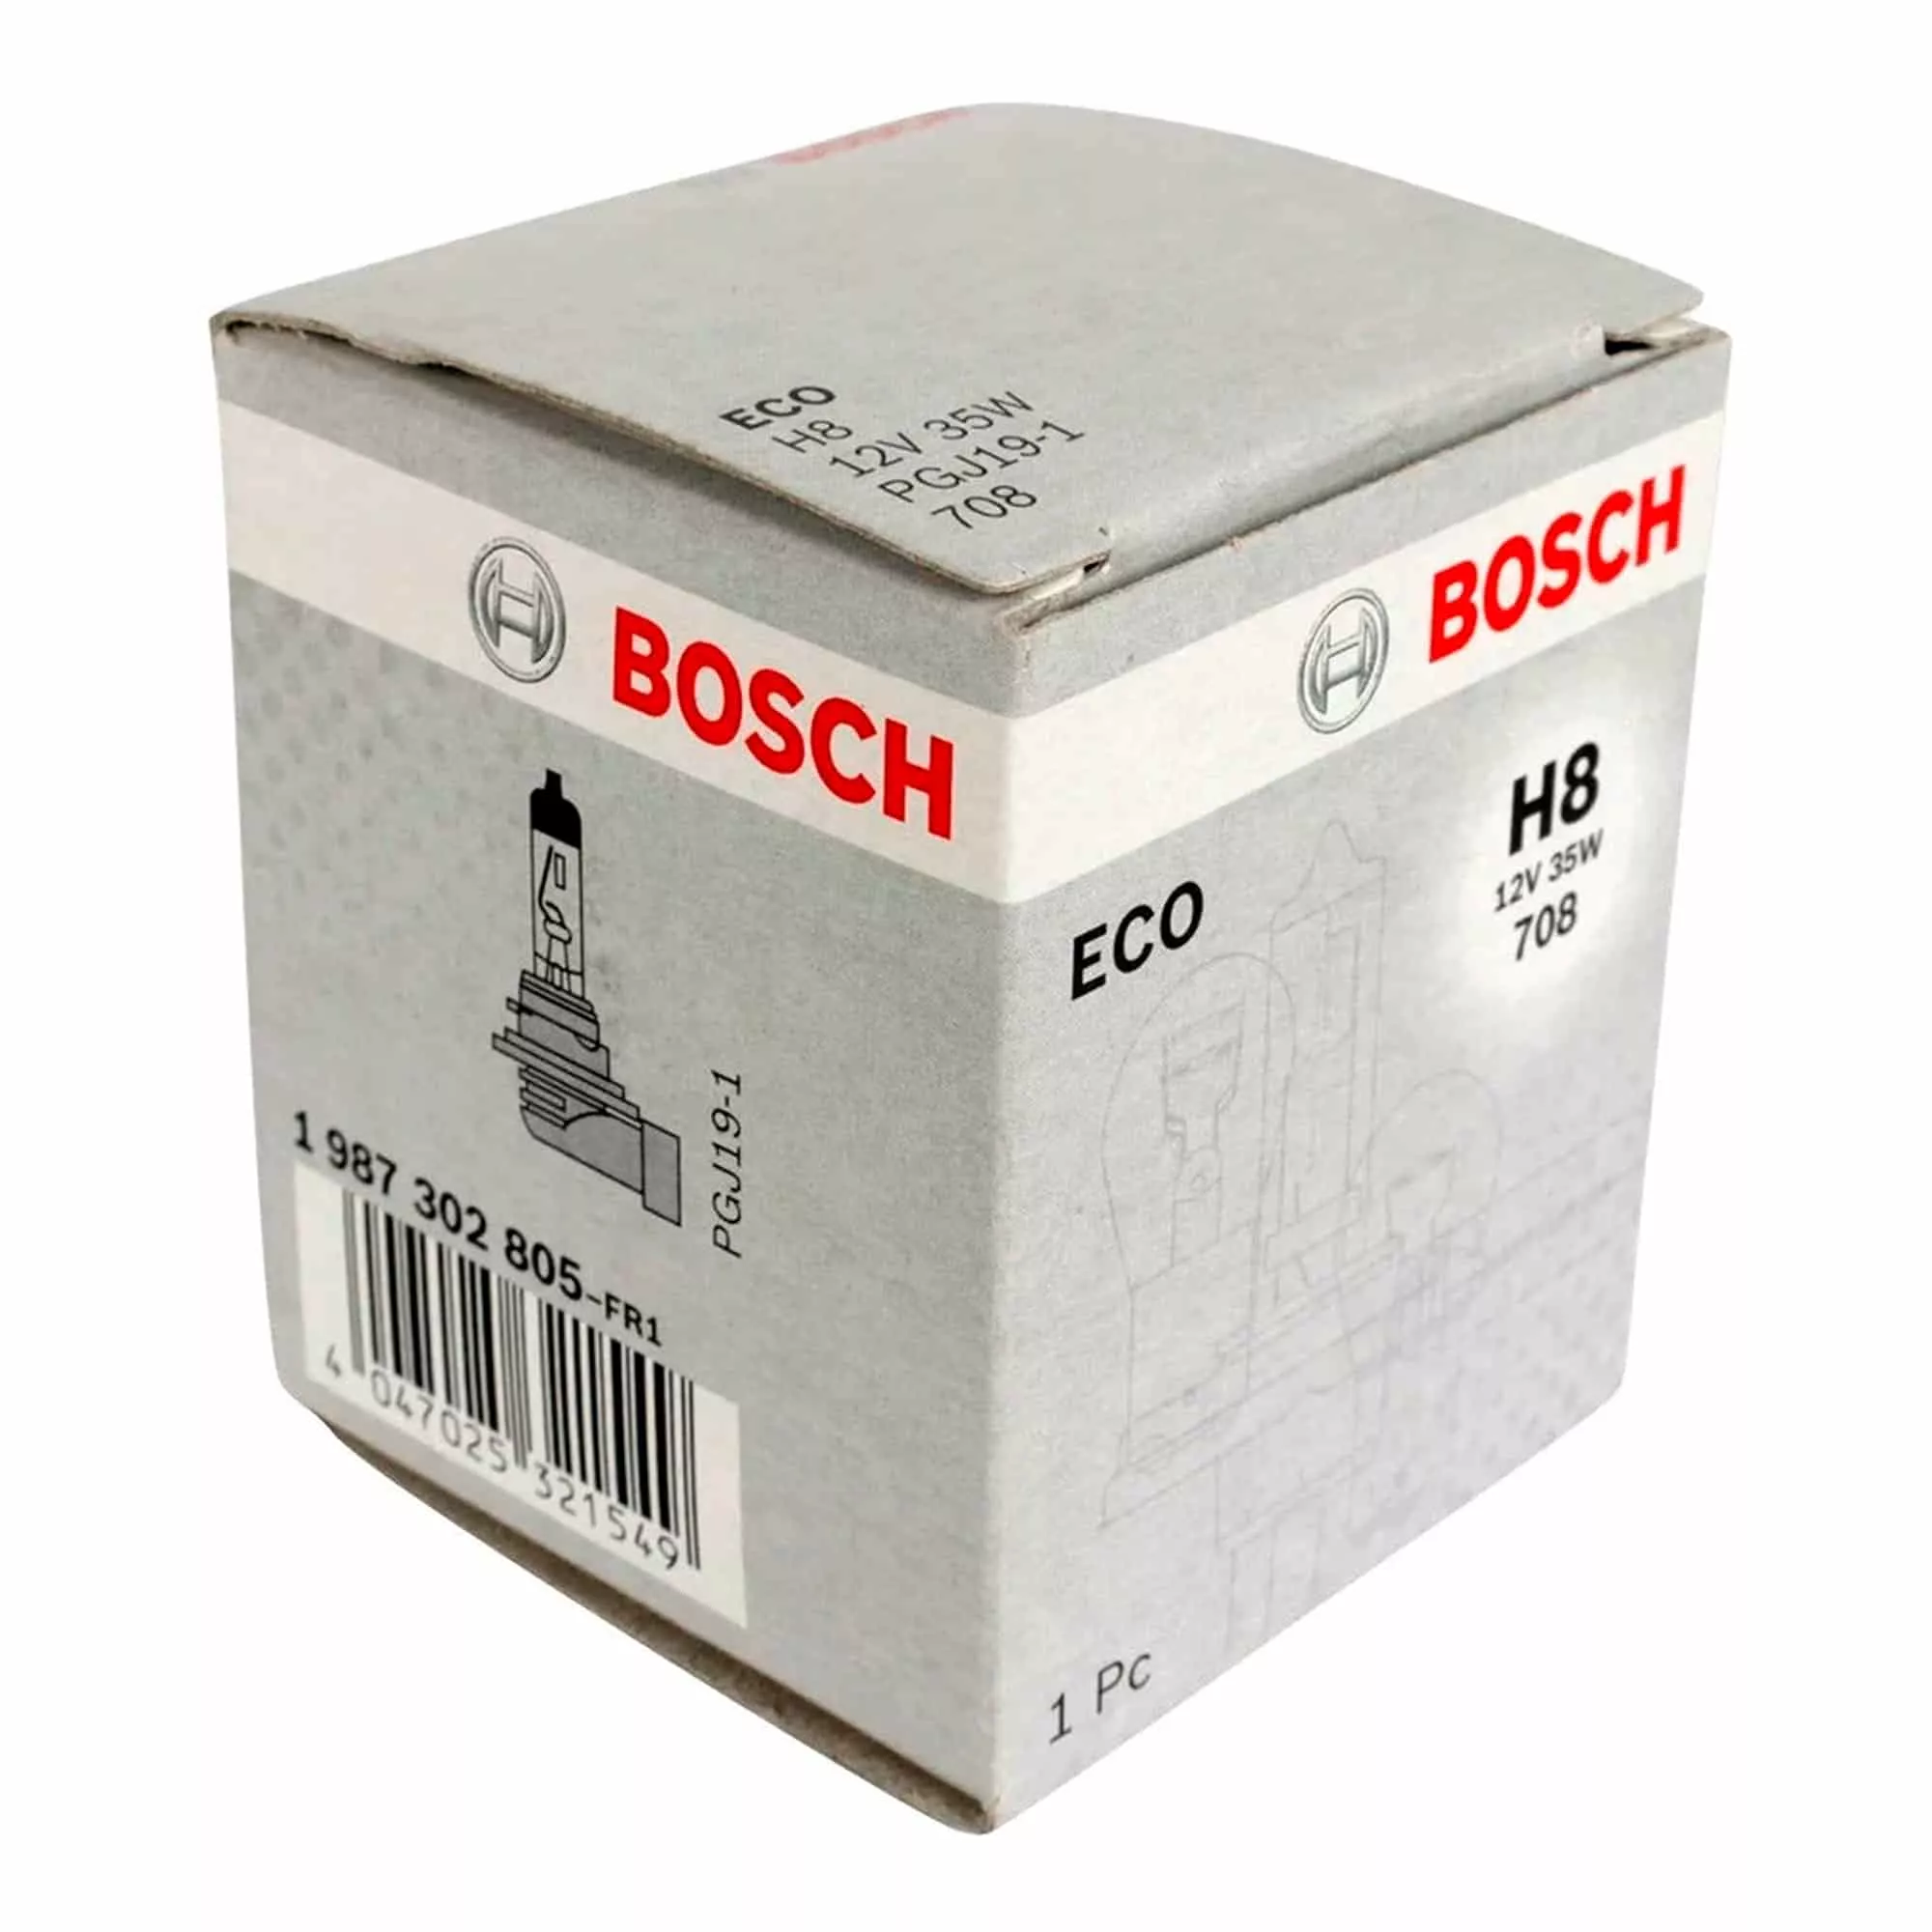 Лампа Bosch ECO H8 12V 35W 1987302805